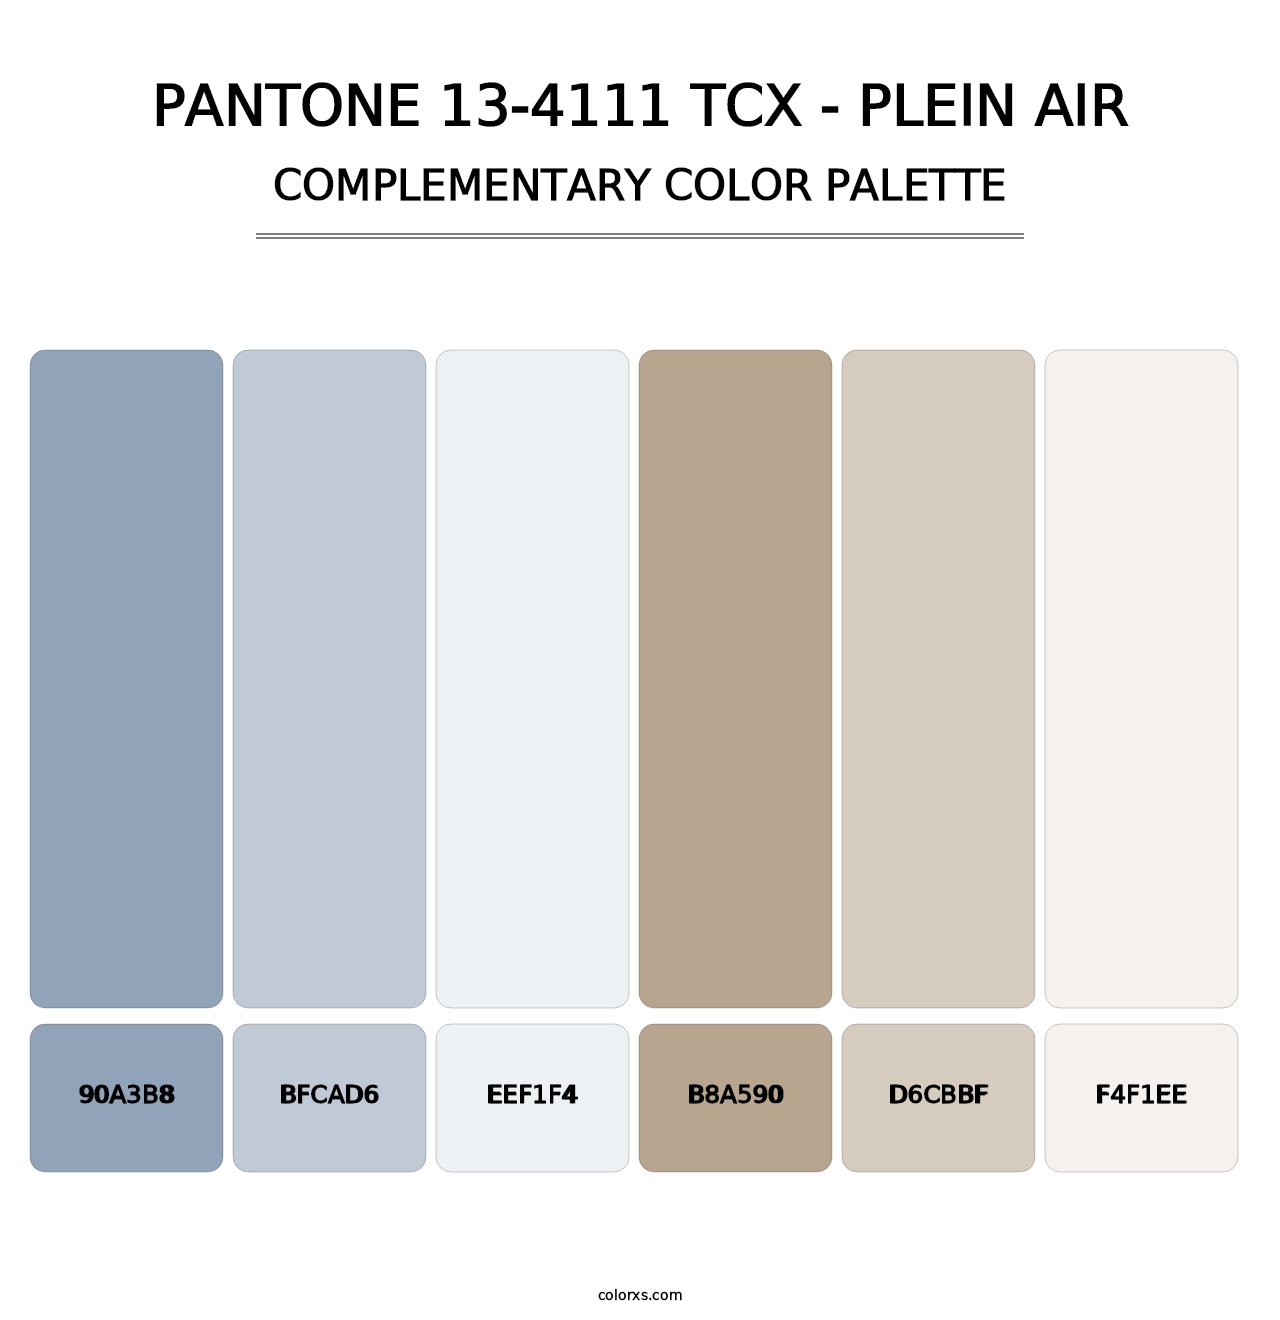 PANTONE 13-4111 TCX - Plein Air - Complementary Color Palette